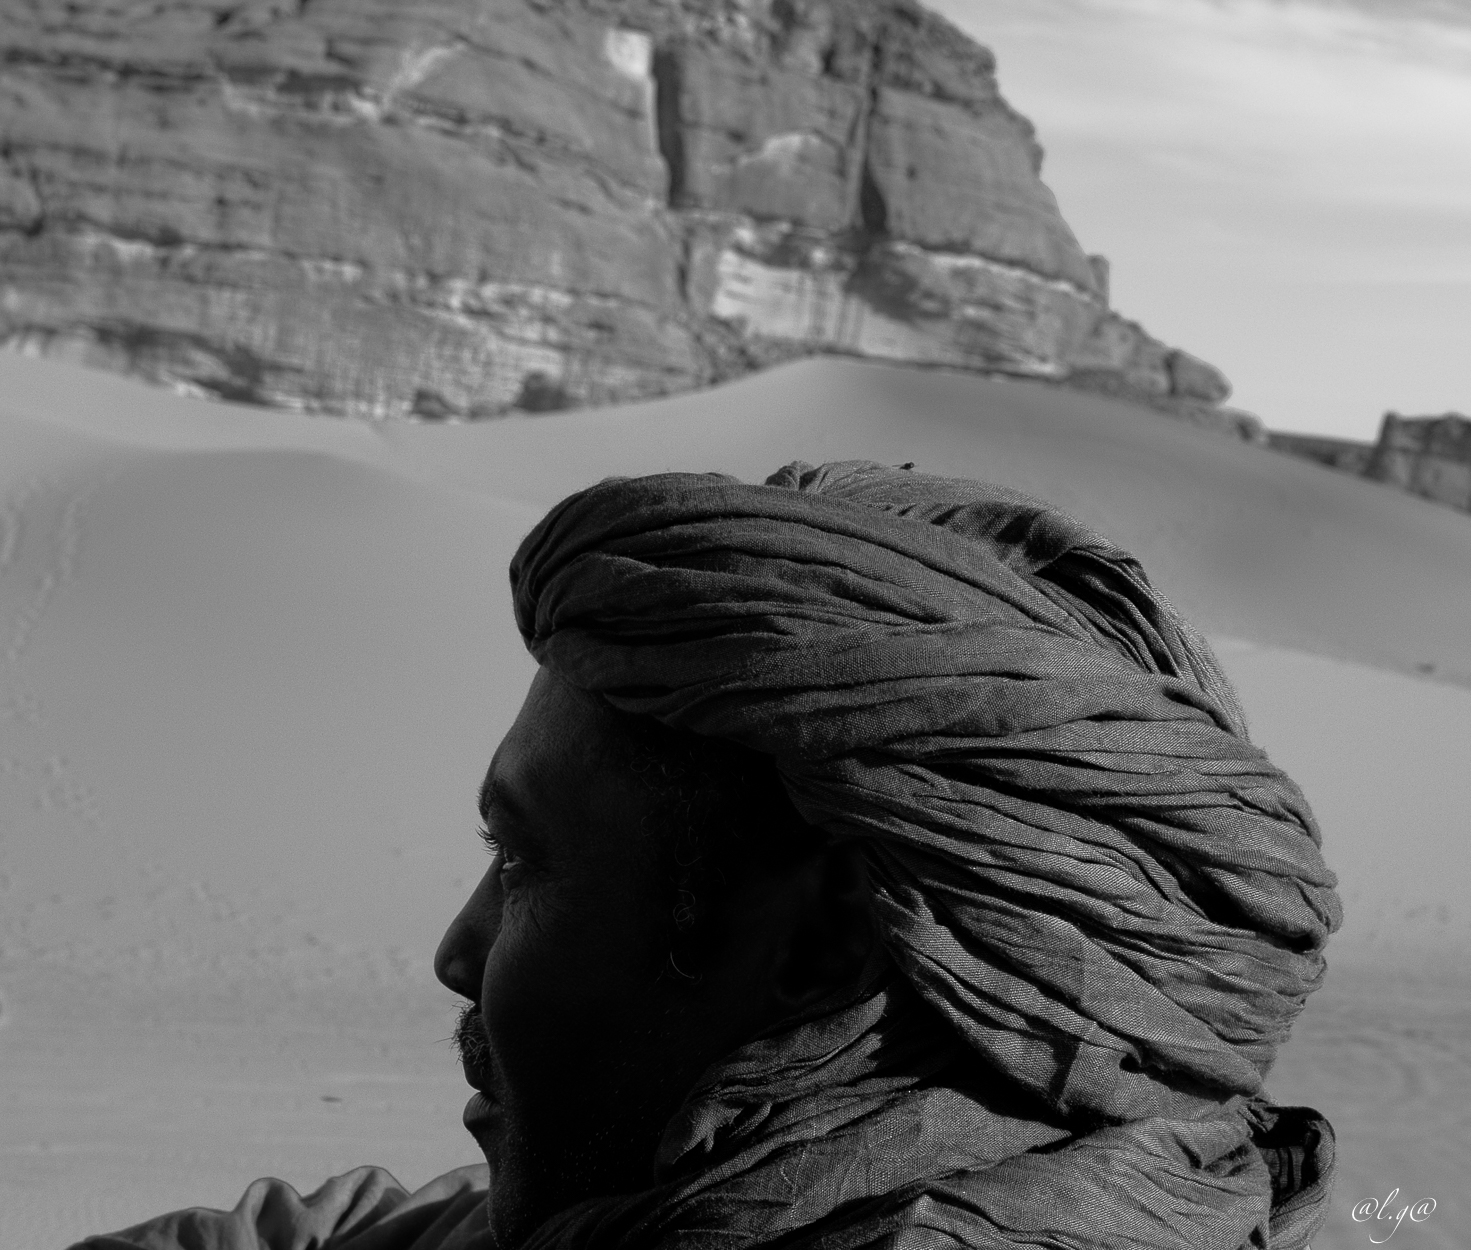 Tinariwen : "Aden Osamnat" - Album Tassili 2011